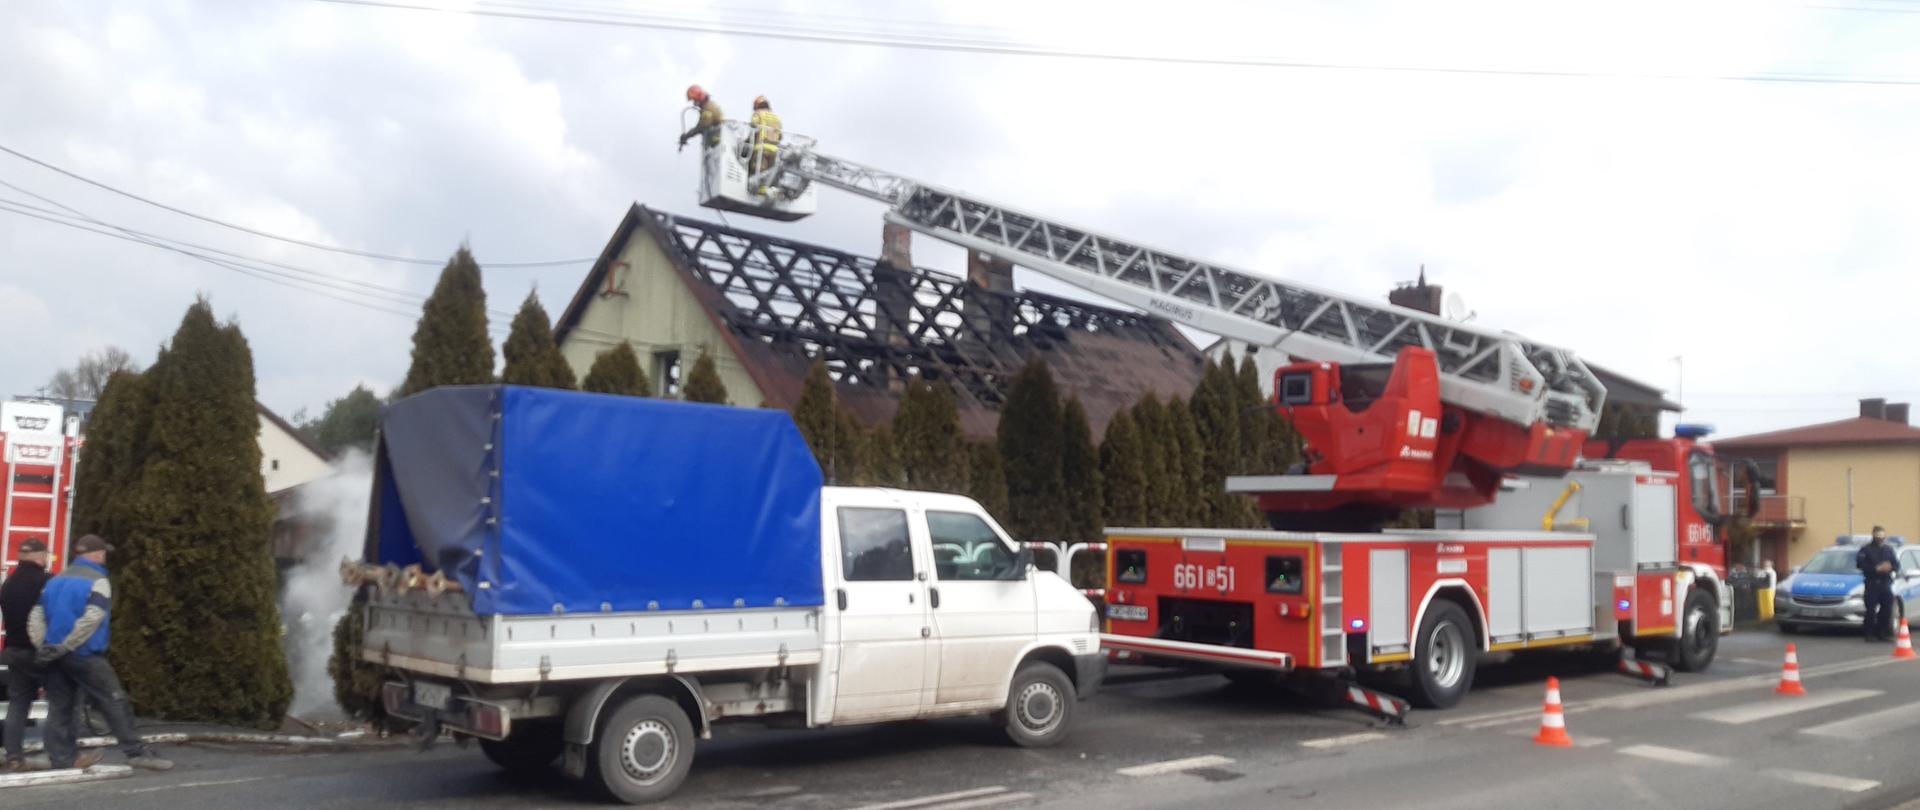 Na zdjęciu widać drabinę mechaniczną pożarniczą ze strażakami na tle palącego się budynku